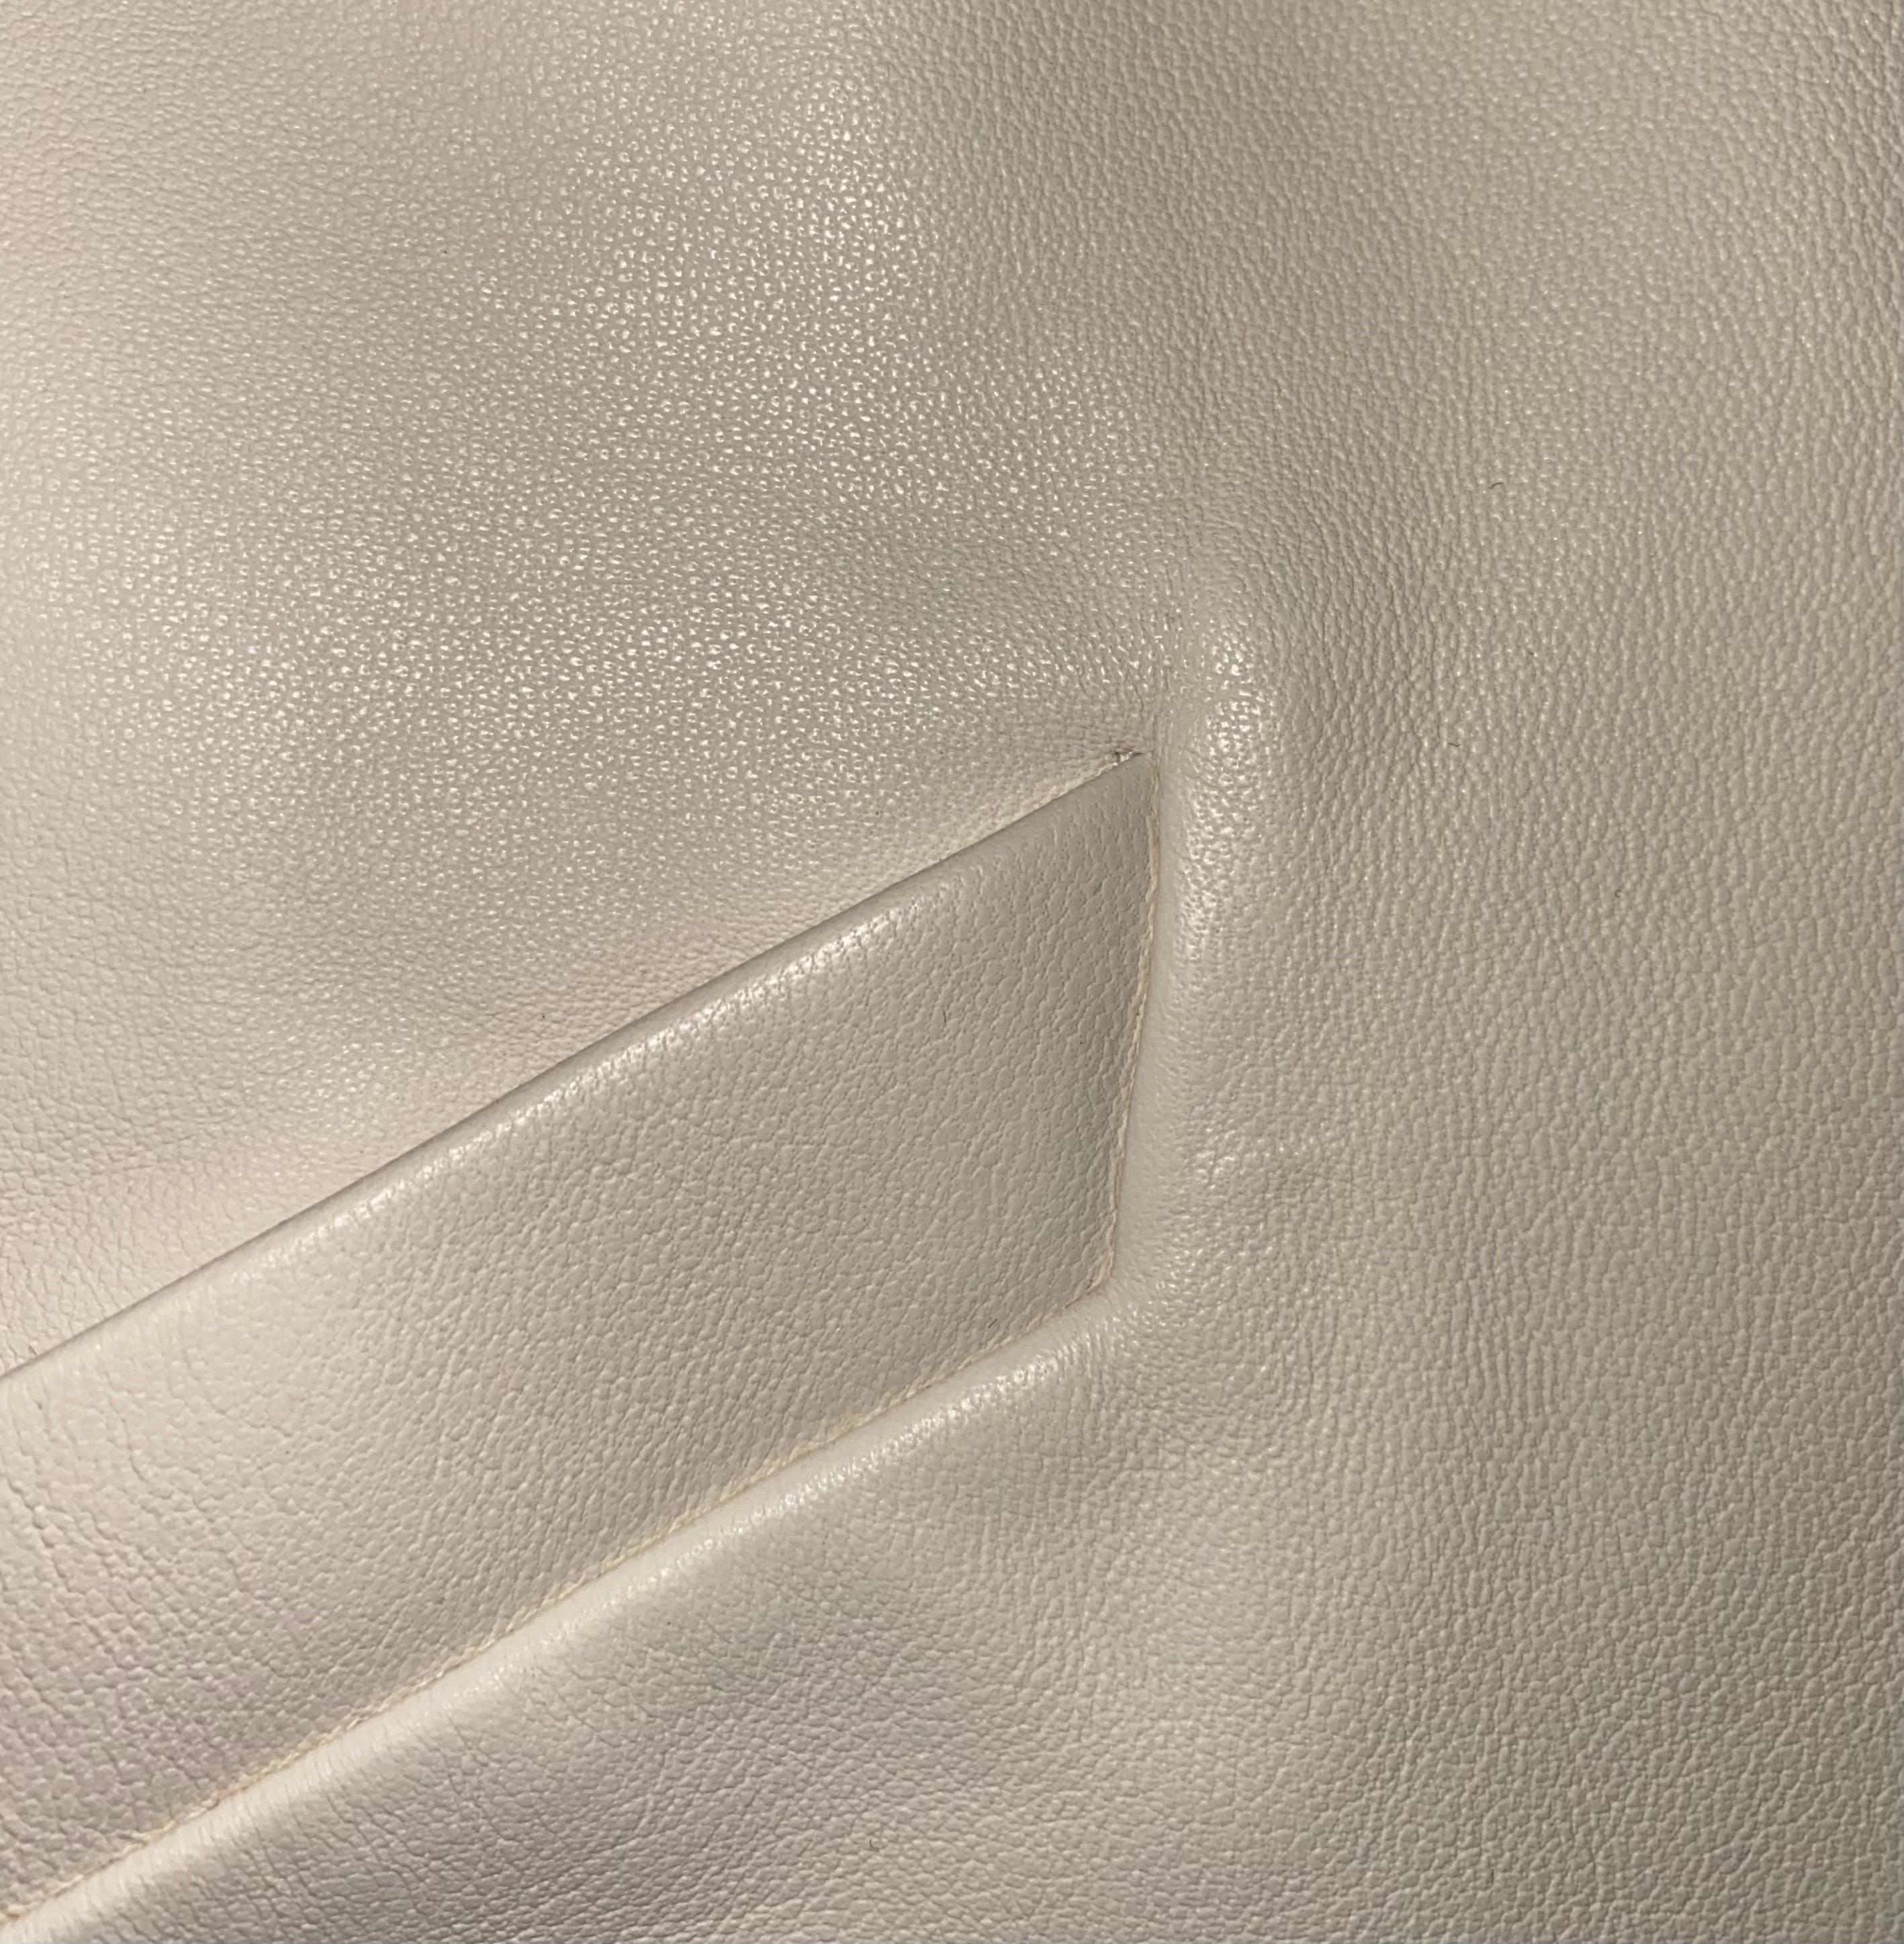 UNWORN Chanel Ivory Finest Lambskin Leather Jacket Blazer 1